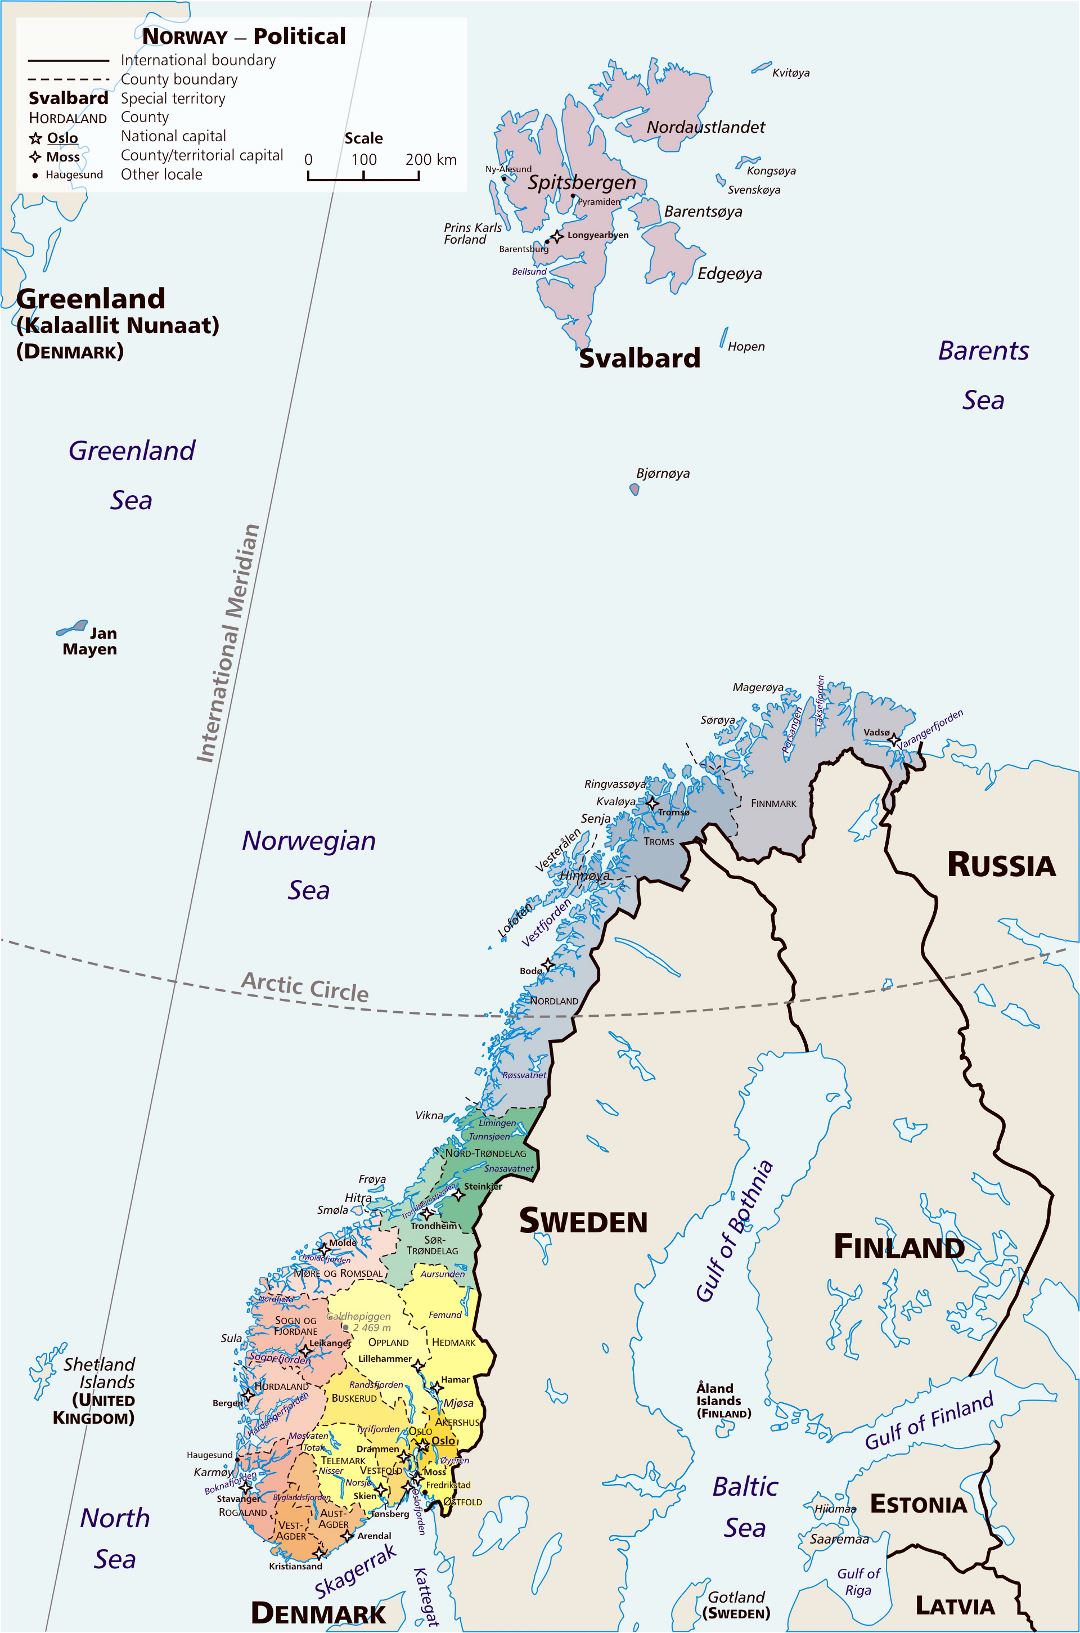 Grande detallado mapa político y administrativo de Noruega con principales ciudades